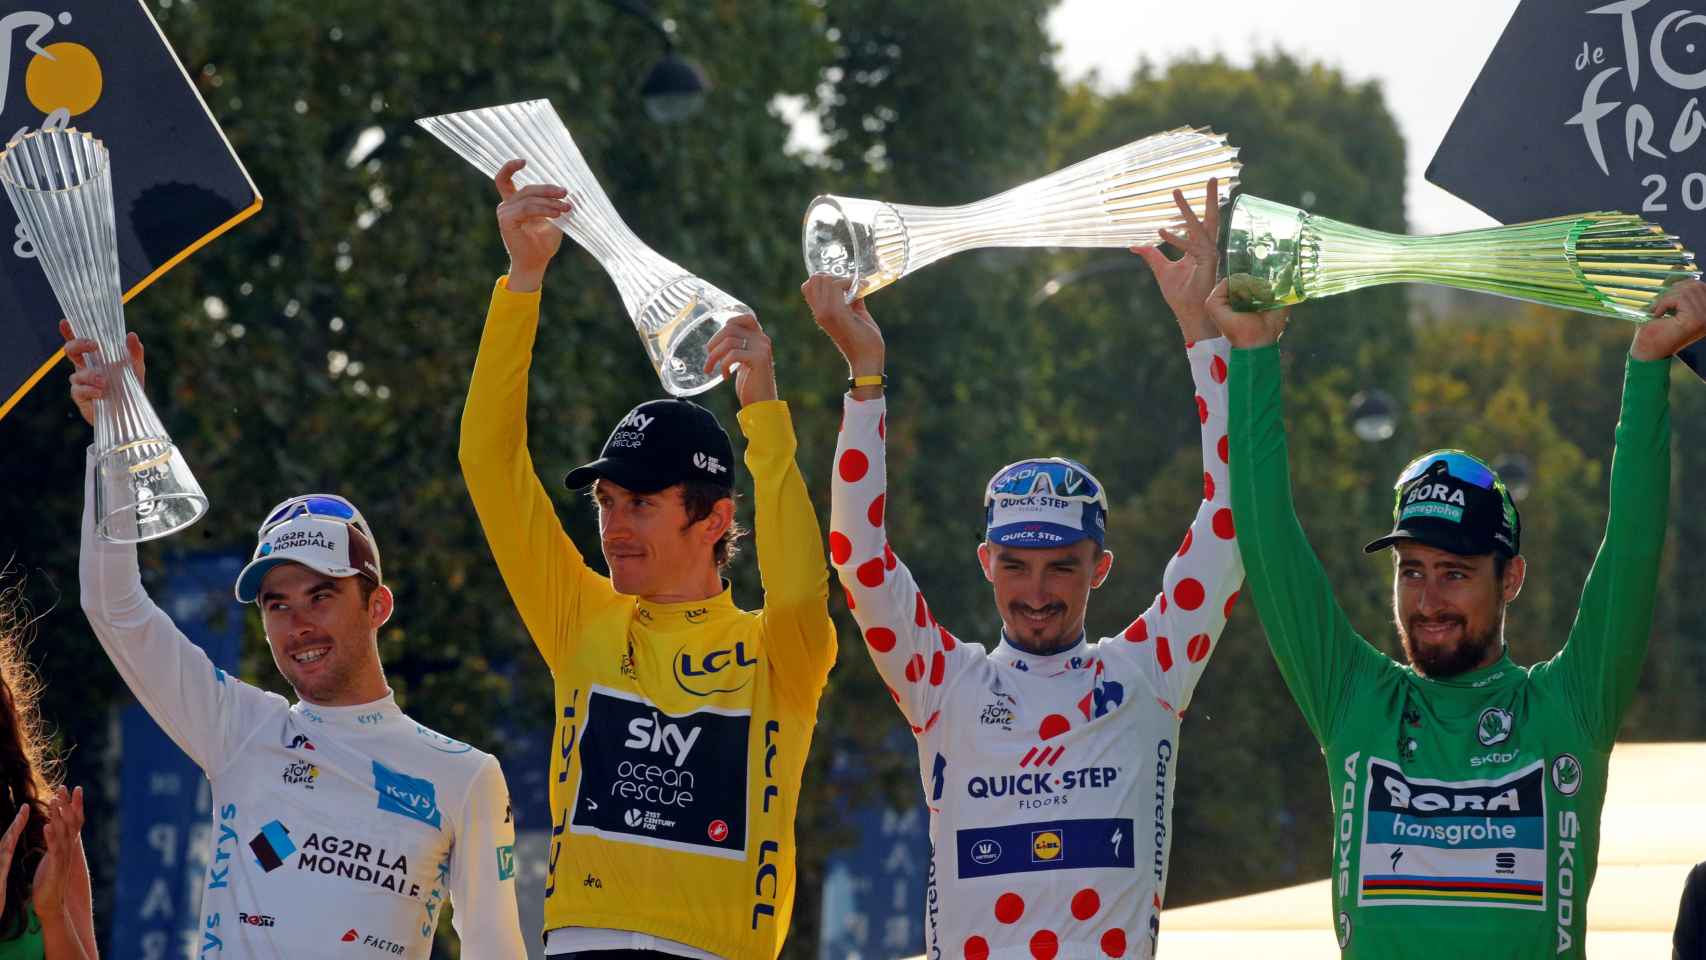 Latour (i), Thomas, Alaphilippe y Sagan en el podio del Tour de Francia.